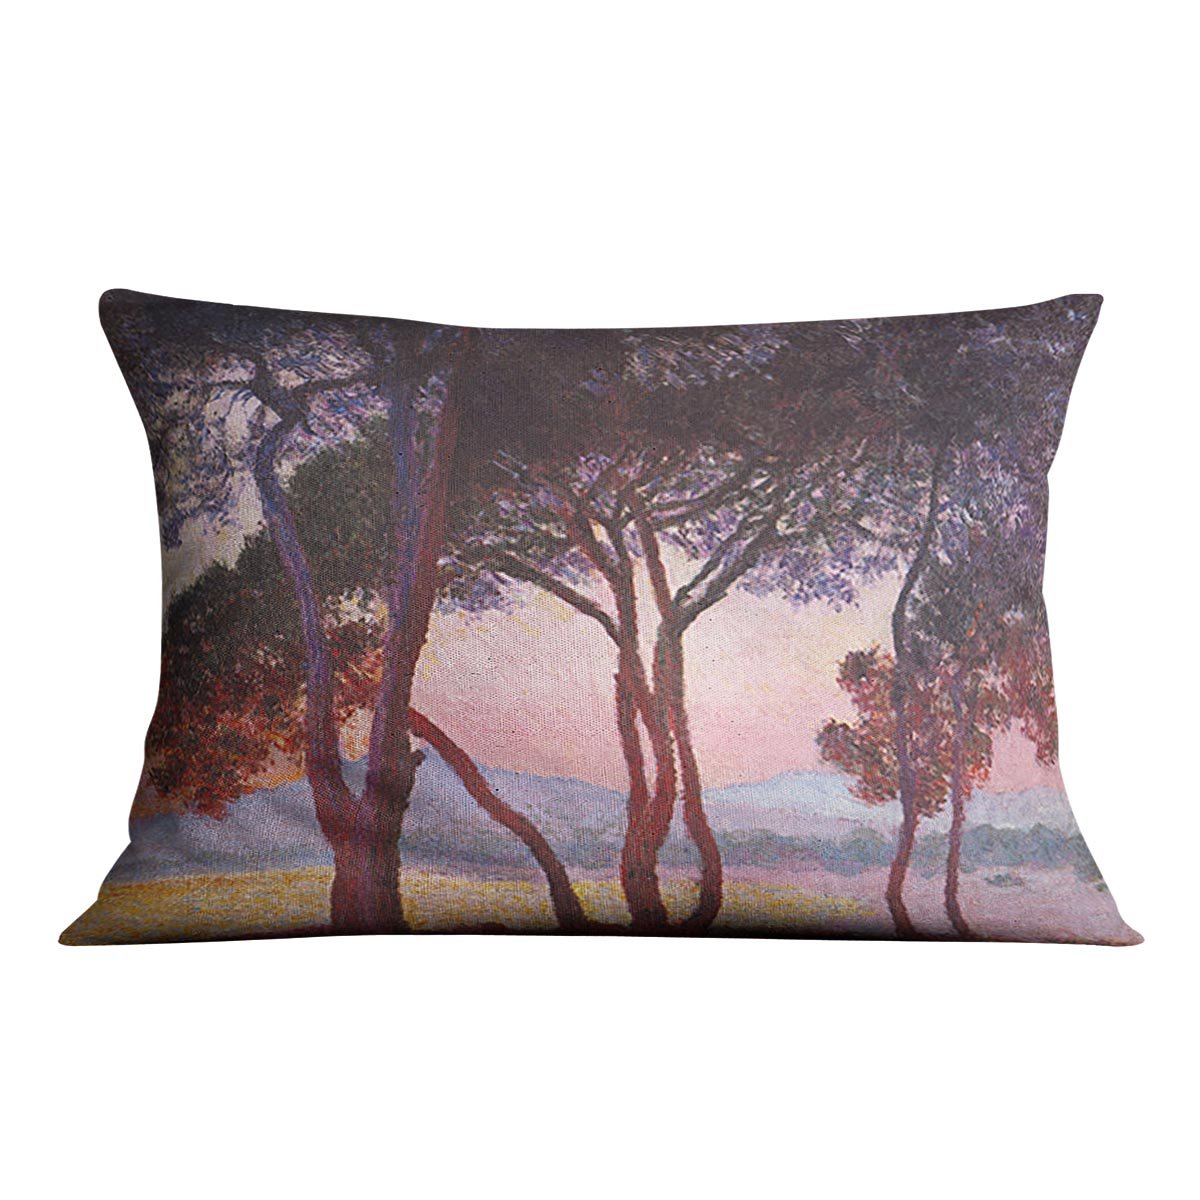 Juan les Pins by Monet Throw Pillow